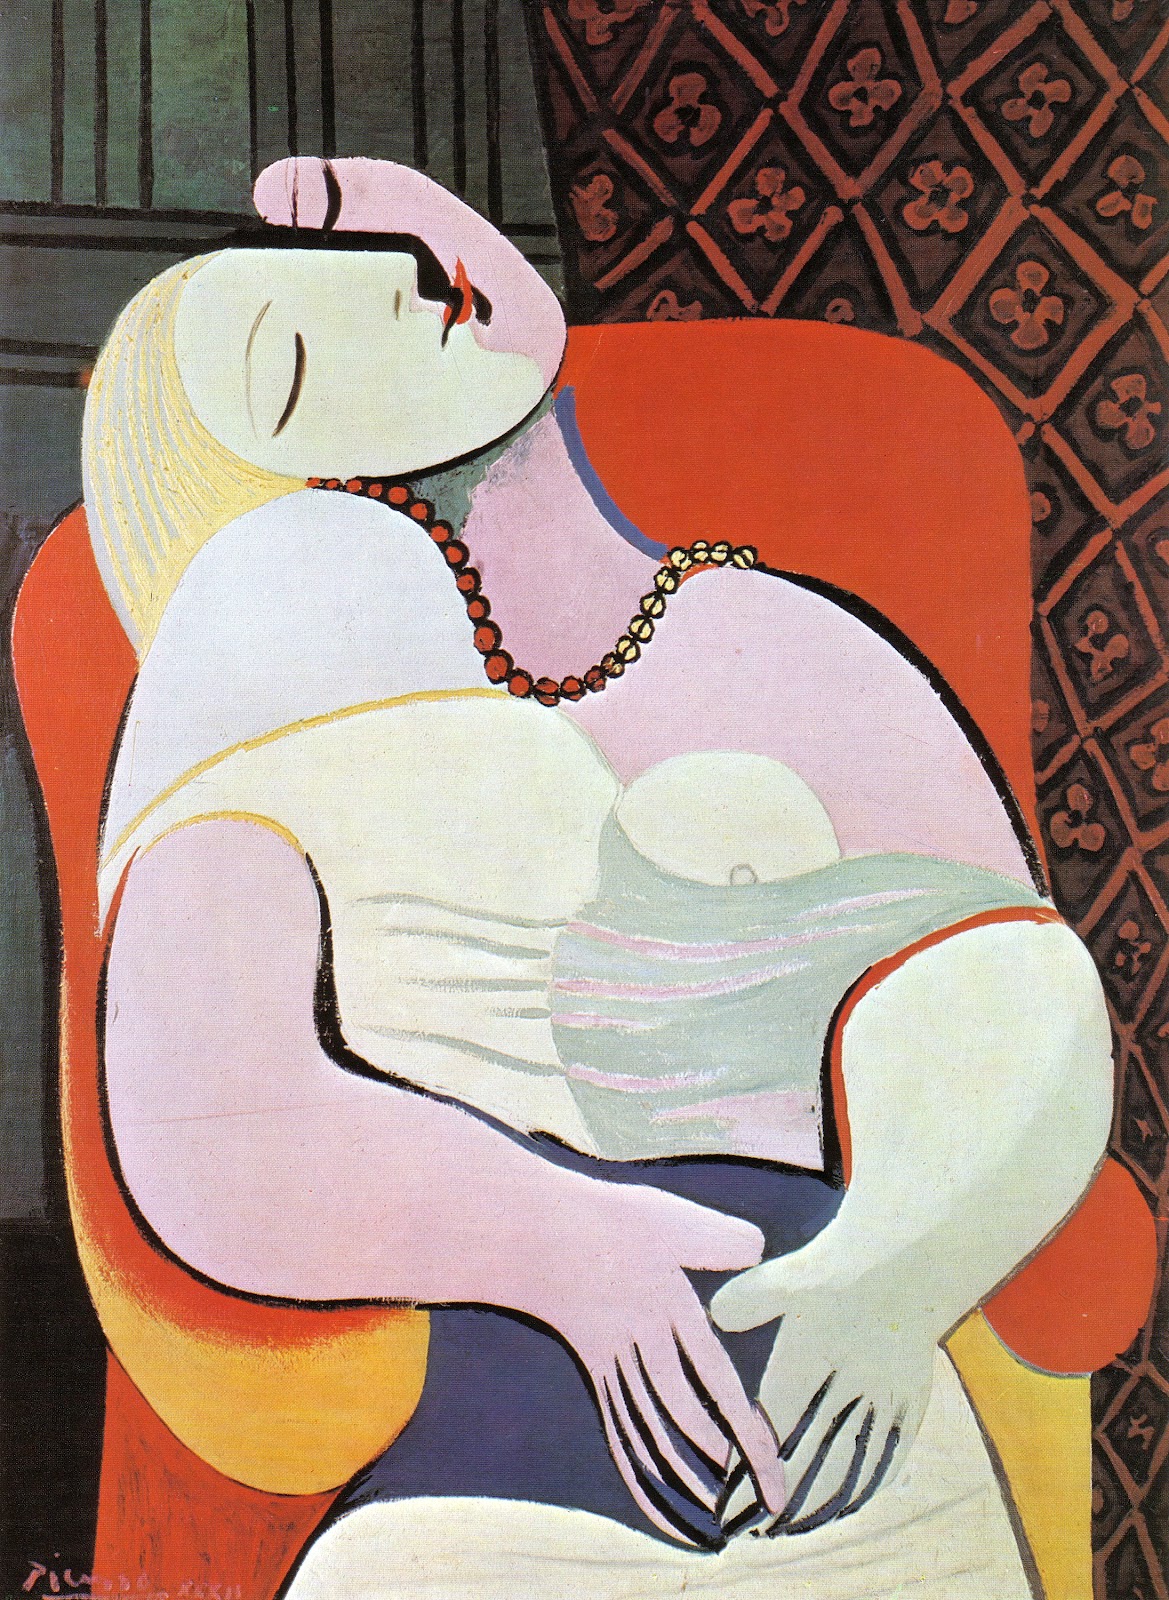 La Rêve (El sueño) by Pablo Picasso - 1932 Colección privada